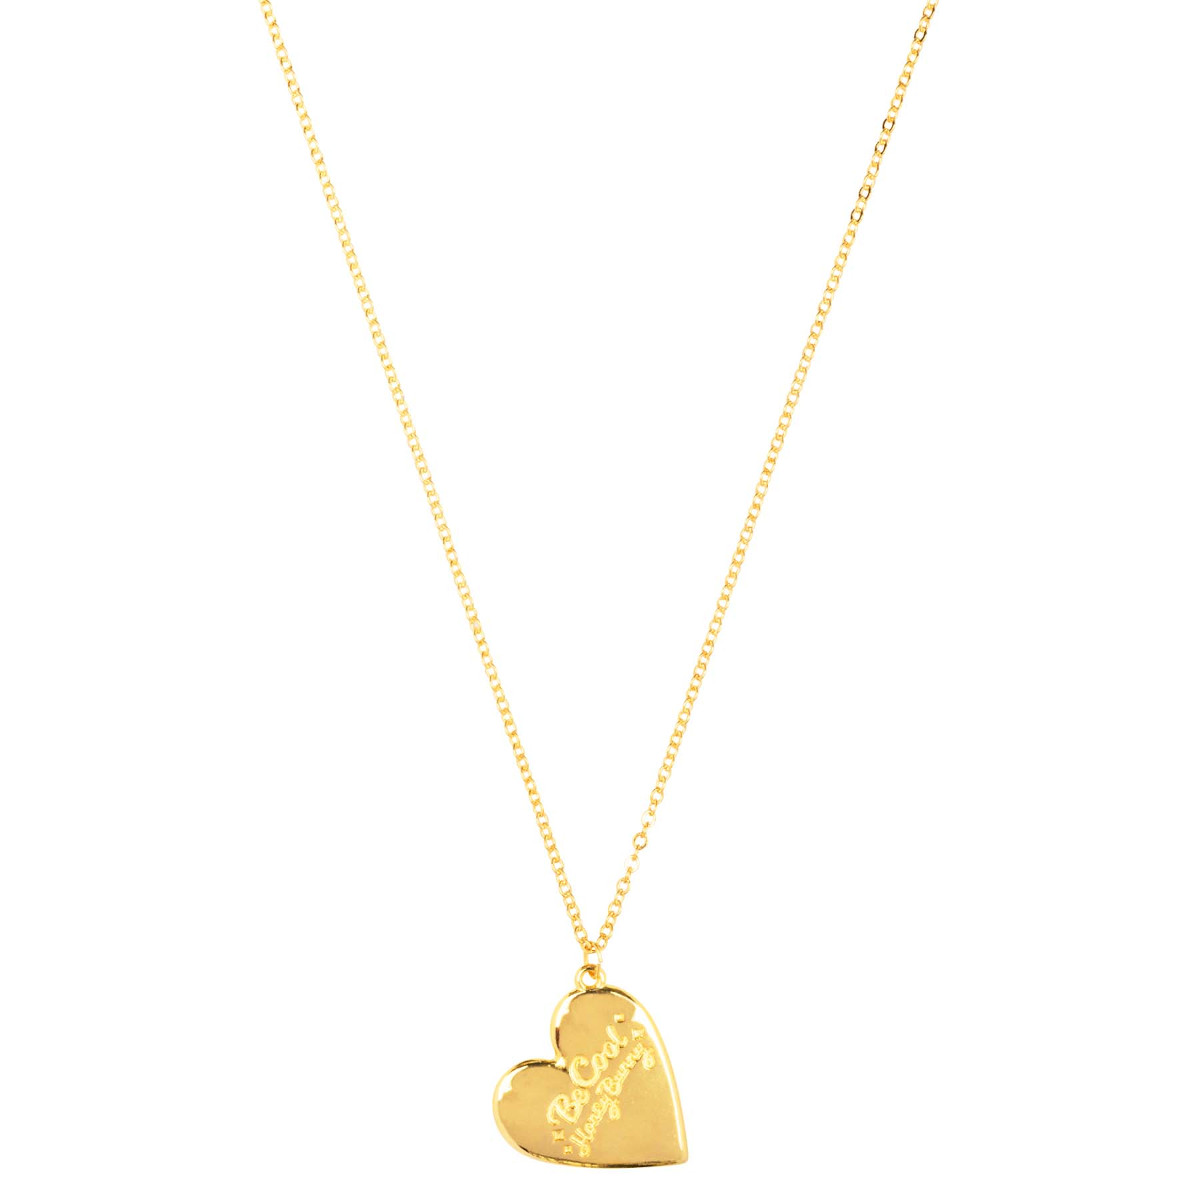 Zierliche Halskette mit Herz-Anhänger, vergoldet und Gravur -Be cool honey bunny-